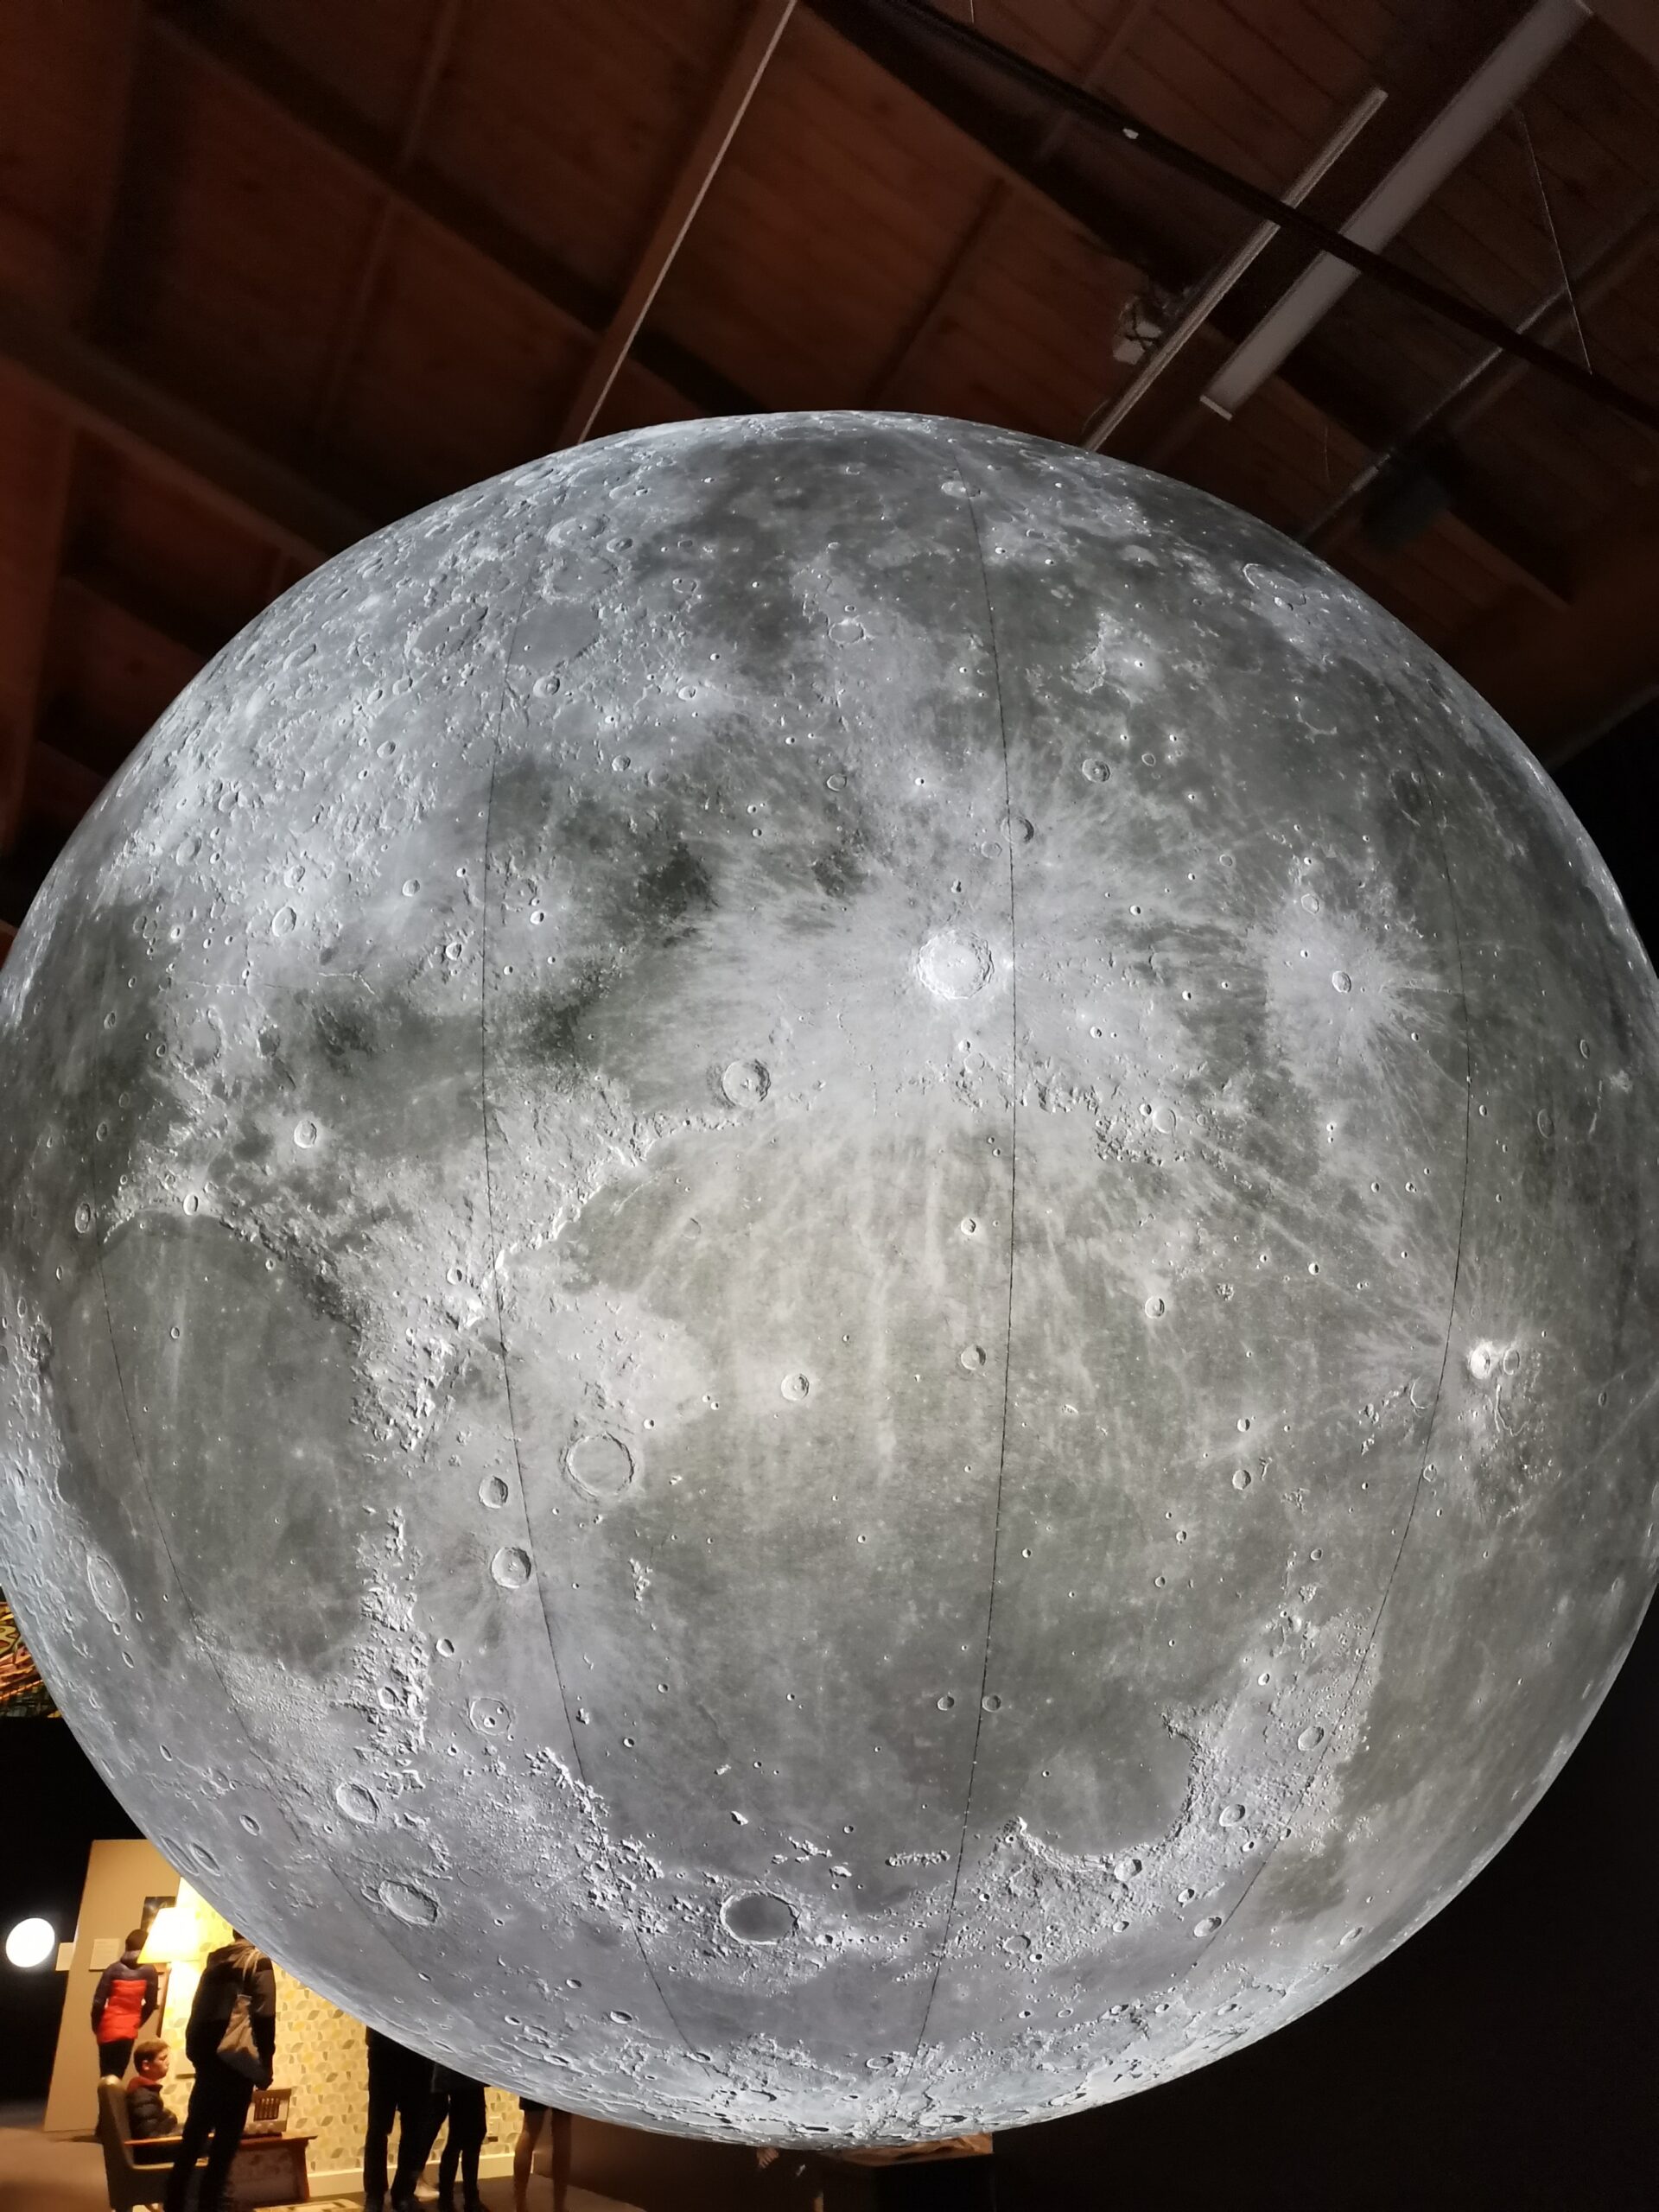 基督城博物馆举办月球探索展览，快来和月亮合影吧！（7月4日-11月8日）